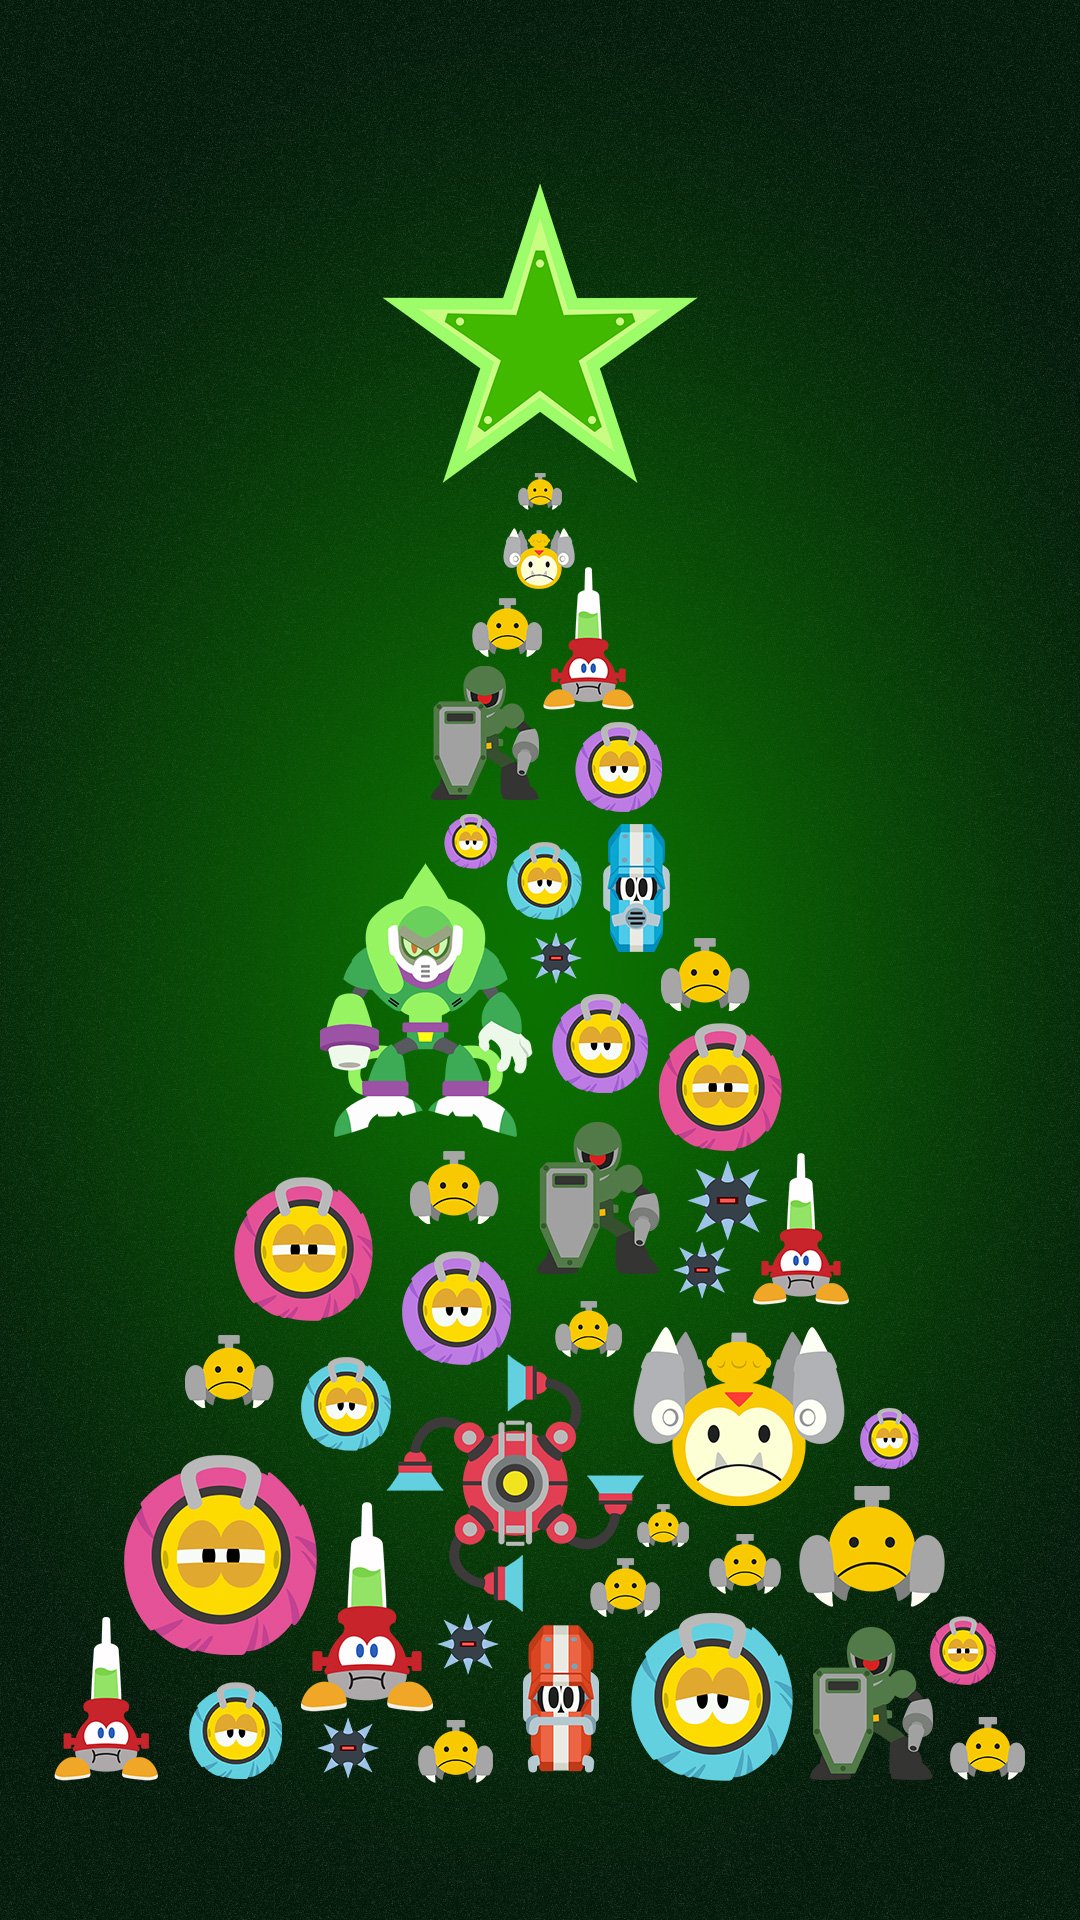 Rockman Unity 在 Twitter 上 今回プレゼントしたクリスマス待ち受けはブロックマンメインですが 他のボスのクリスマスツリーが欲しい と言う方は ロックマン11推しボス をつけて欲しいボス名をつぶやいてください 推し度によって次のプレゼントを決定します